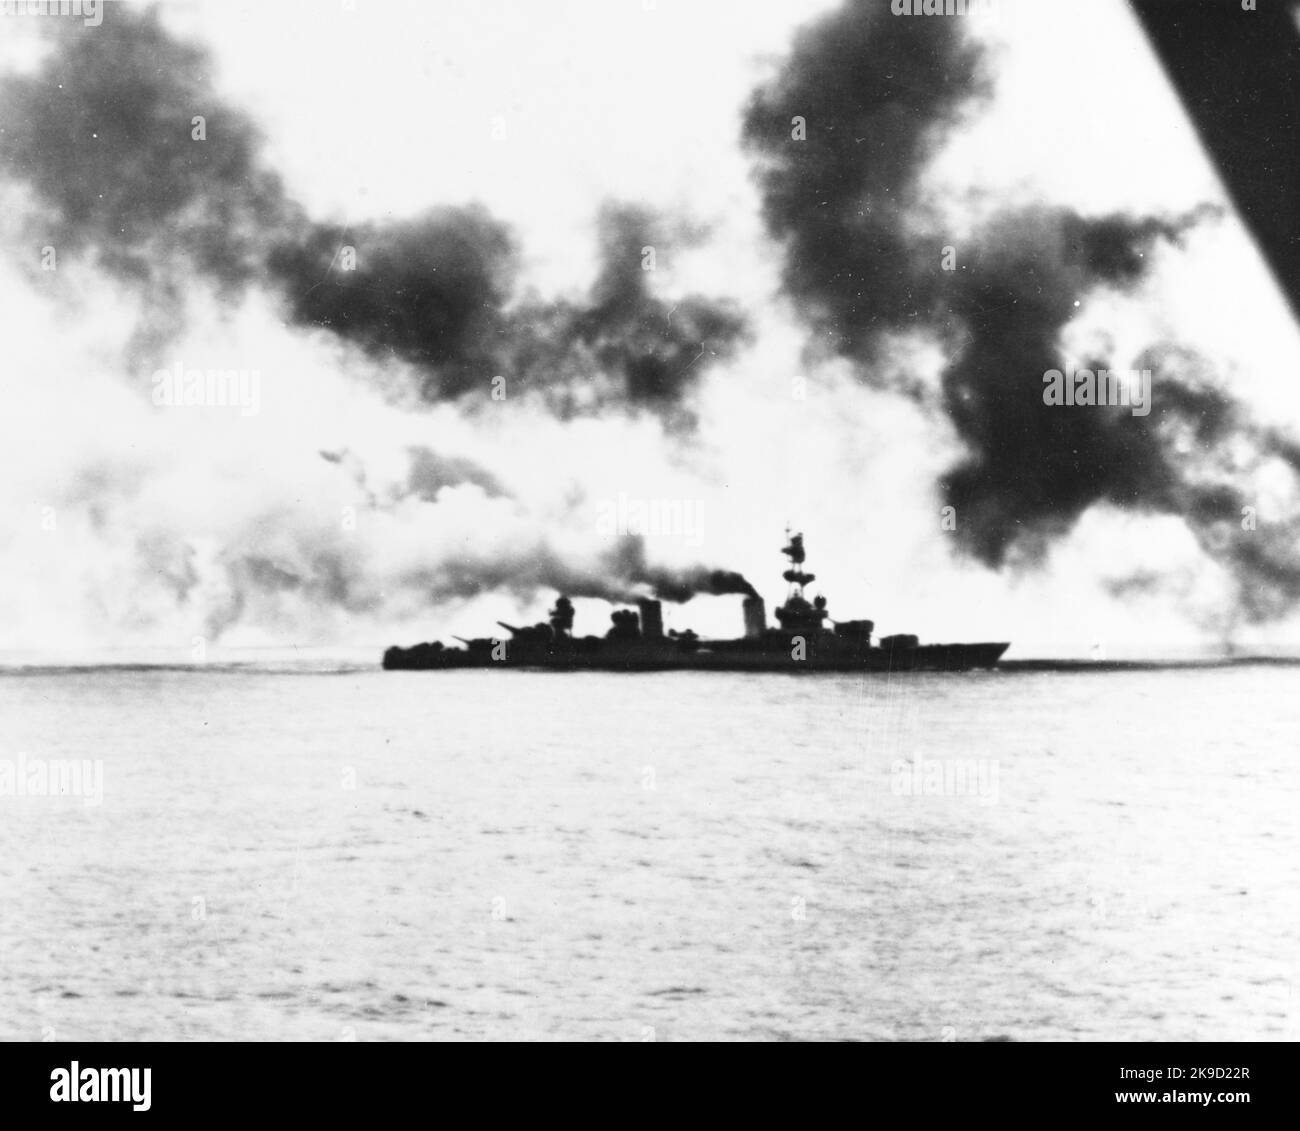 Salt Lake City, danneggiata dal fuoco da fuoco dell'incrociatore giapponese, inizia a perdere velocità prima di andare morto in acqua durante la battaglia sotto uno schermo di fumo posato dai cacciatorpediniere accompagnatori USS Salt Lake City (CL/CA-25) della Marina degli Stati Uniti era un incrociatore di classe Pensacola, più tardi riclassificato come un incrociatore pesante, A volte conosciuto come 'Swayback Maru' o 'Old Swayback'. Ha avuto 11 stelle di battaglia per gli undici impegni a cui ha partecipato. Fu anche la prima nave a dare il nome a Salt Lake City, Utah. 1943 Battaglia delle isole Komandorski Foto Stock